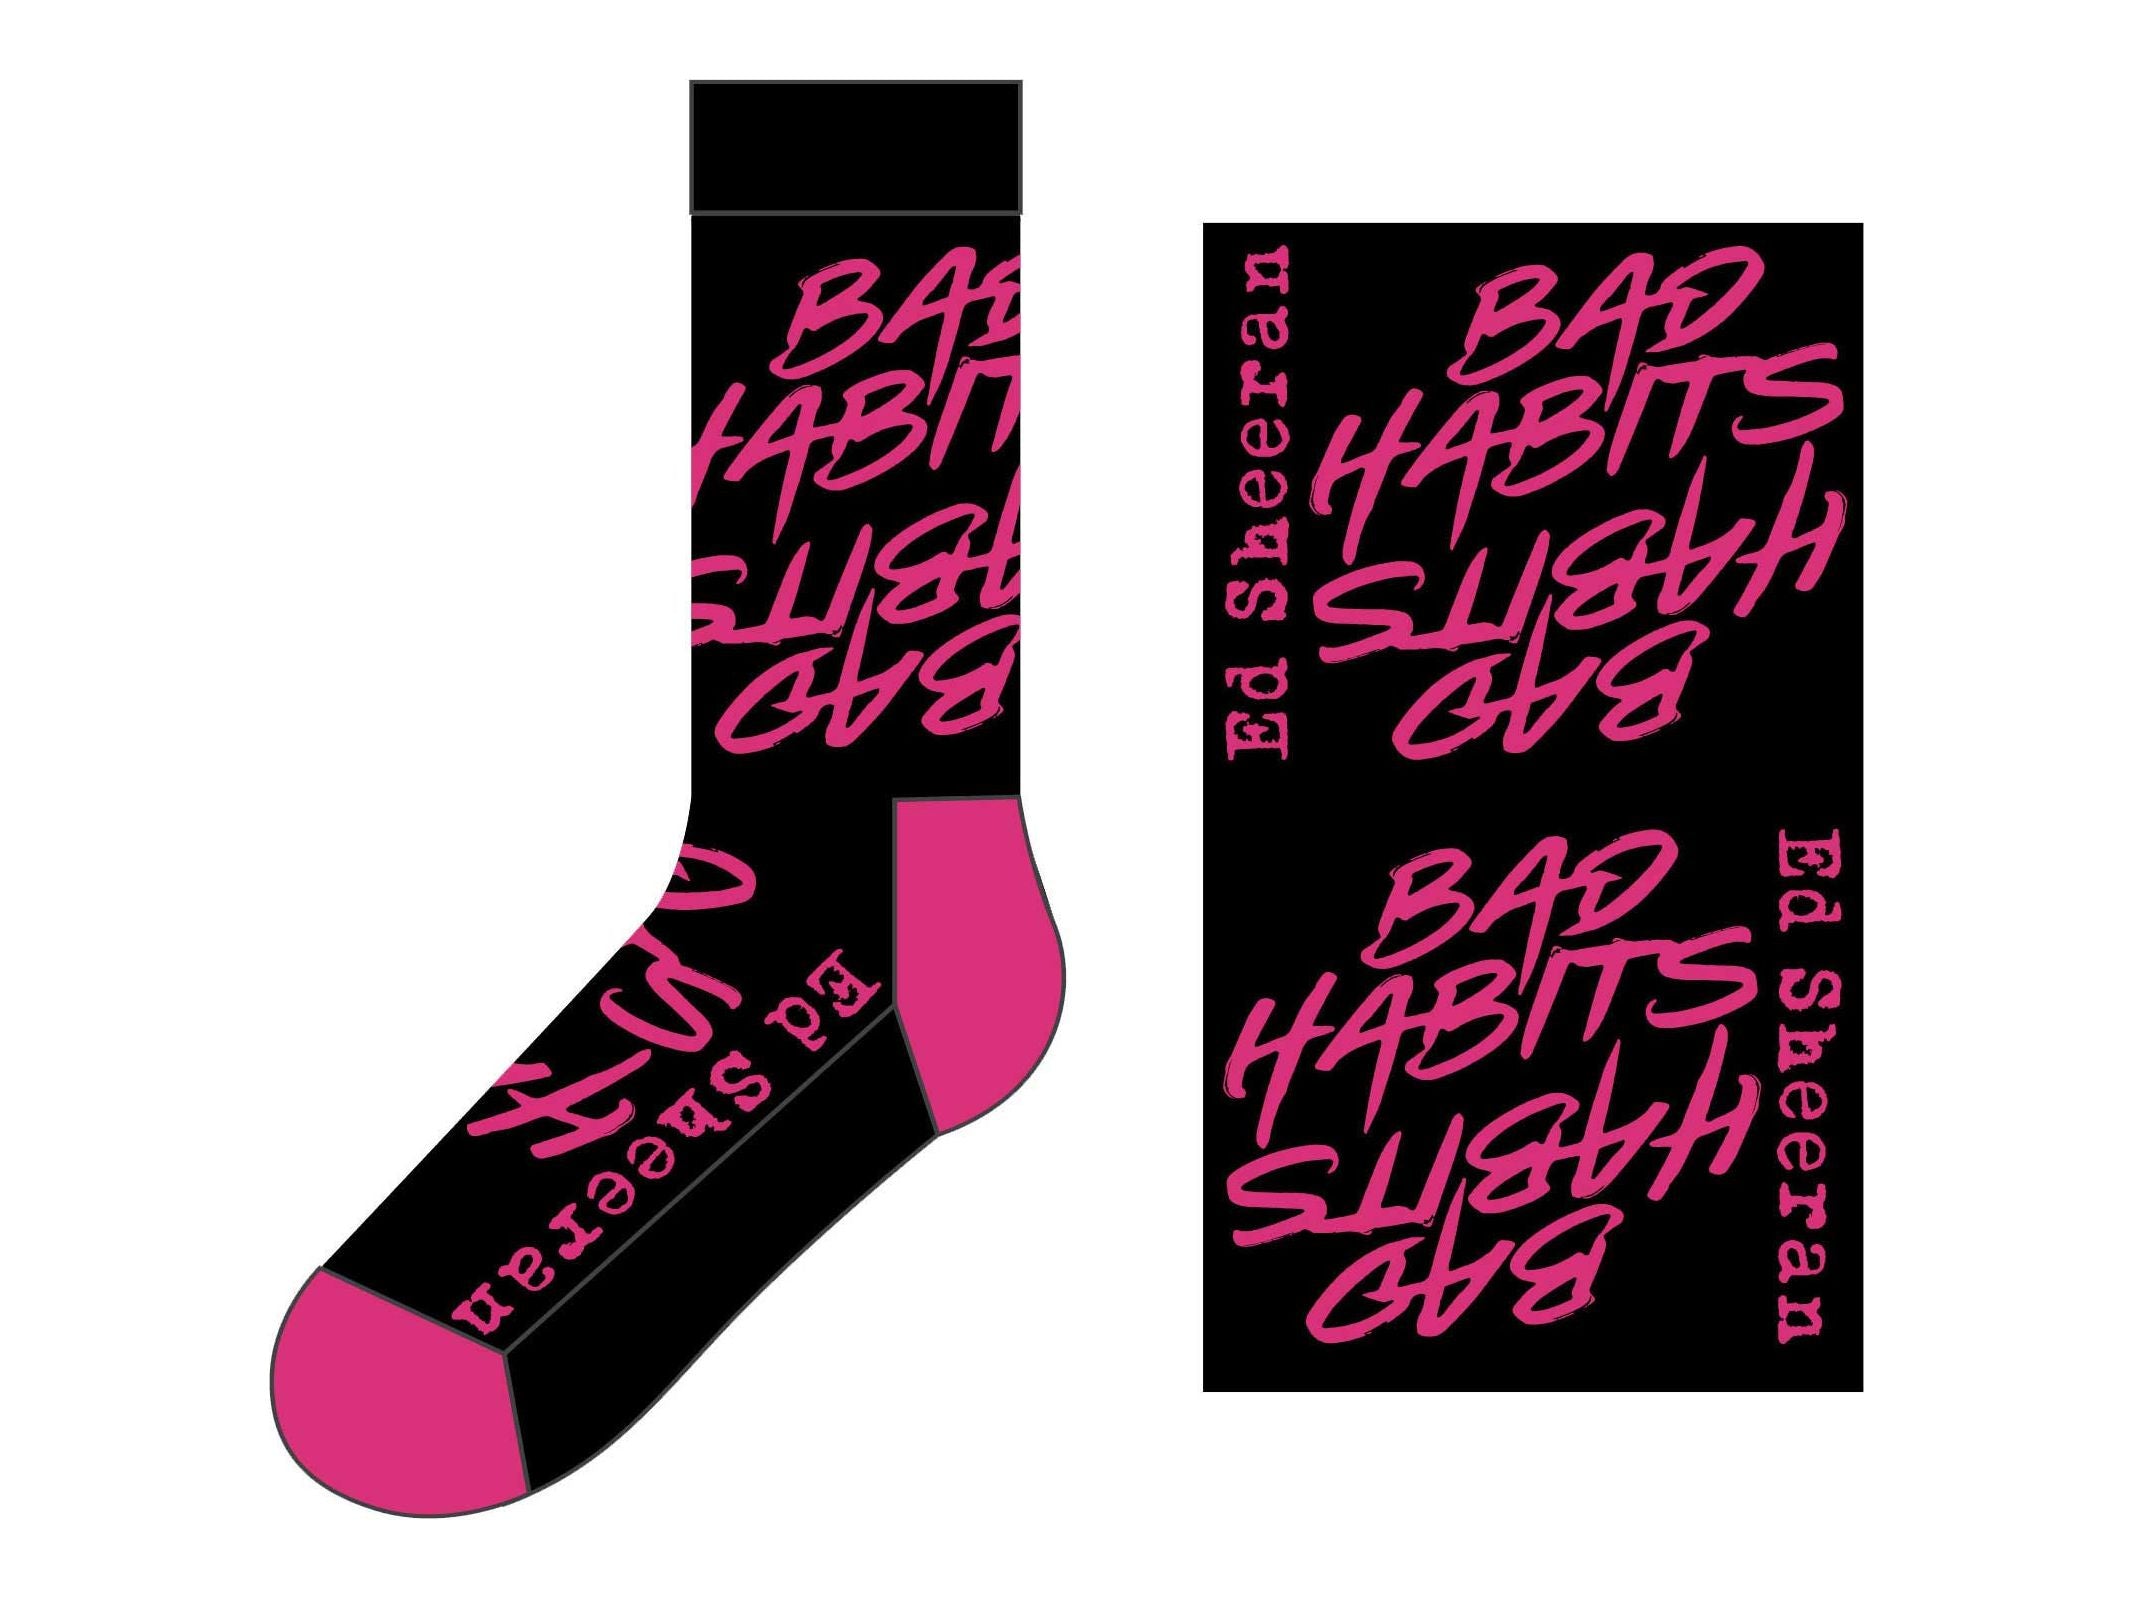 Ed Sheeran Unisex Ankle Socks: Bad Habits (UK SIZE 7 - 11)